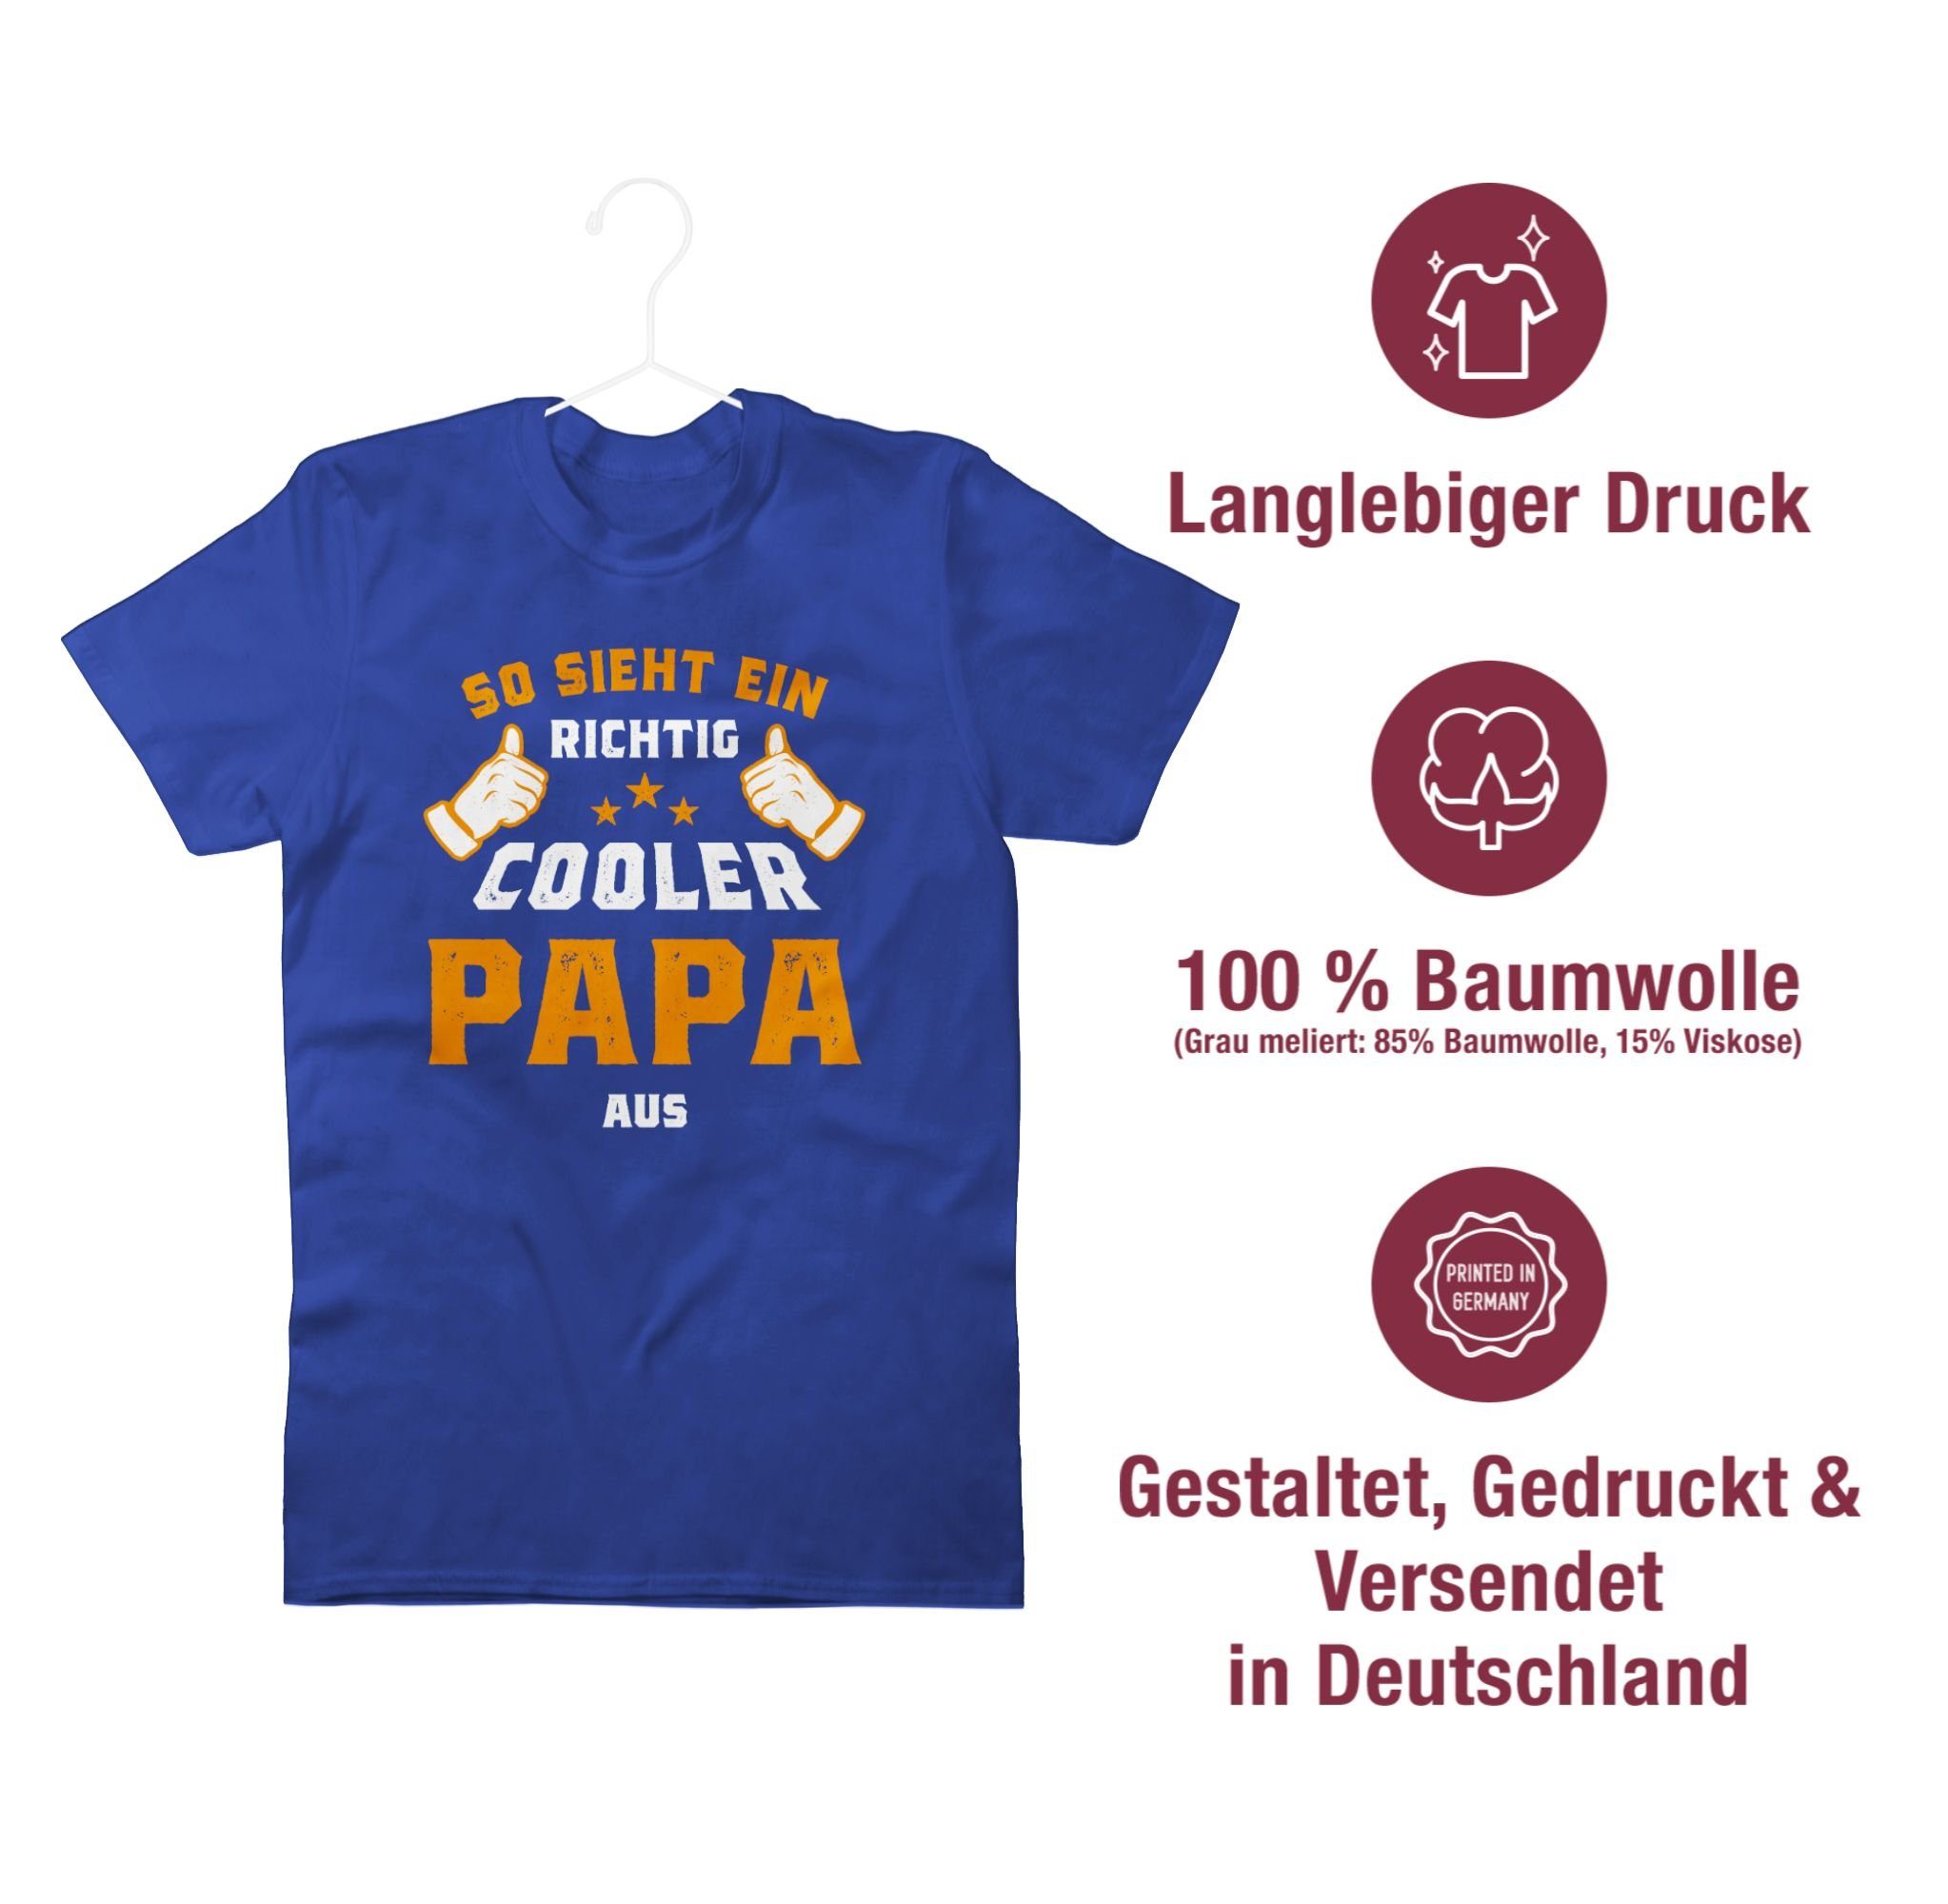 Shirtracer T-Shirt So Vatertag aus sieht Papa Royalblau Orange Geschenk 3 ein richtig für Papa cooler